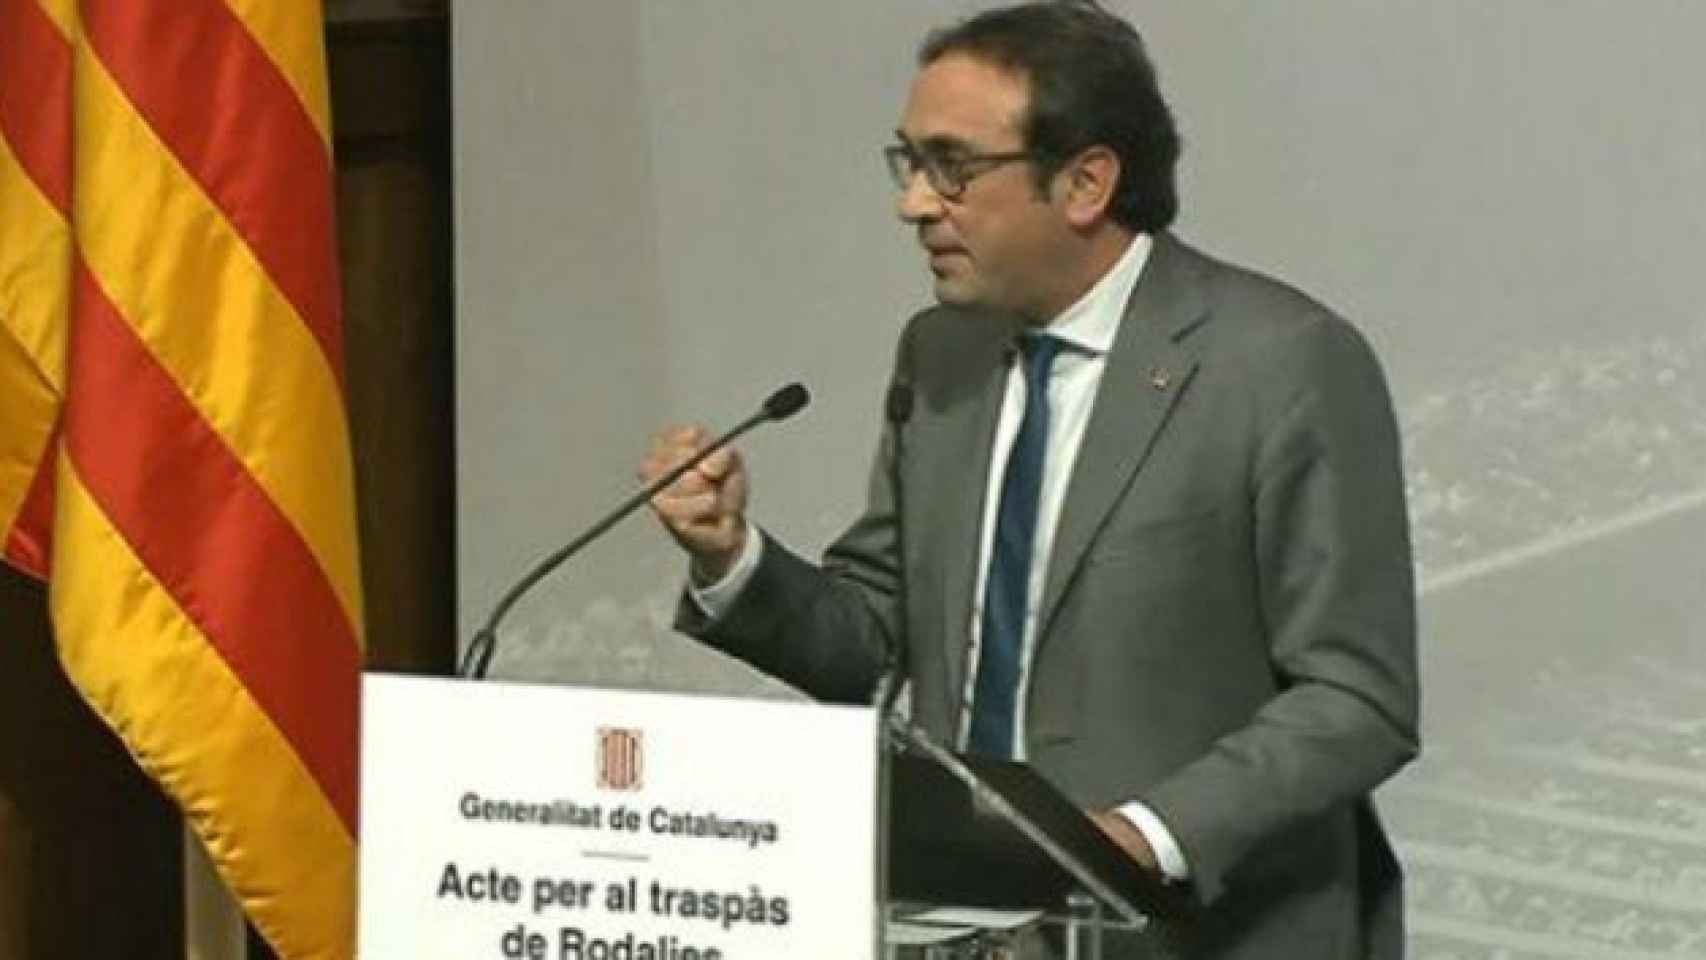 El consejero de Territorio y Sostenibilidad, Josep Rull, durante el acto 'Pel traspàs de Rodalies' (Por el traspado de Cercanías).